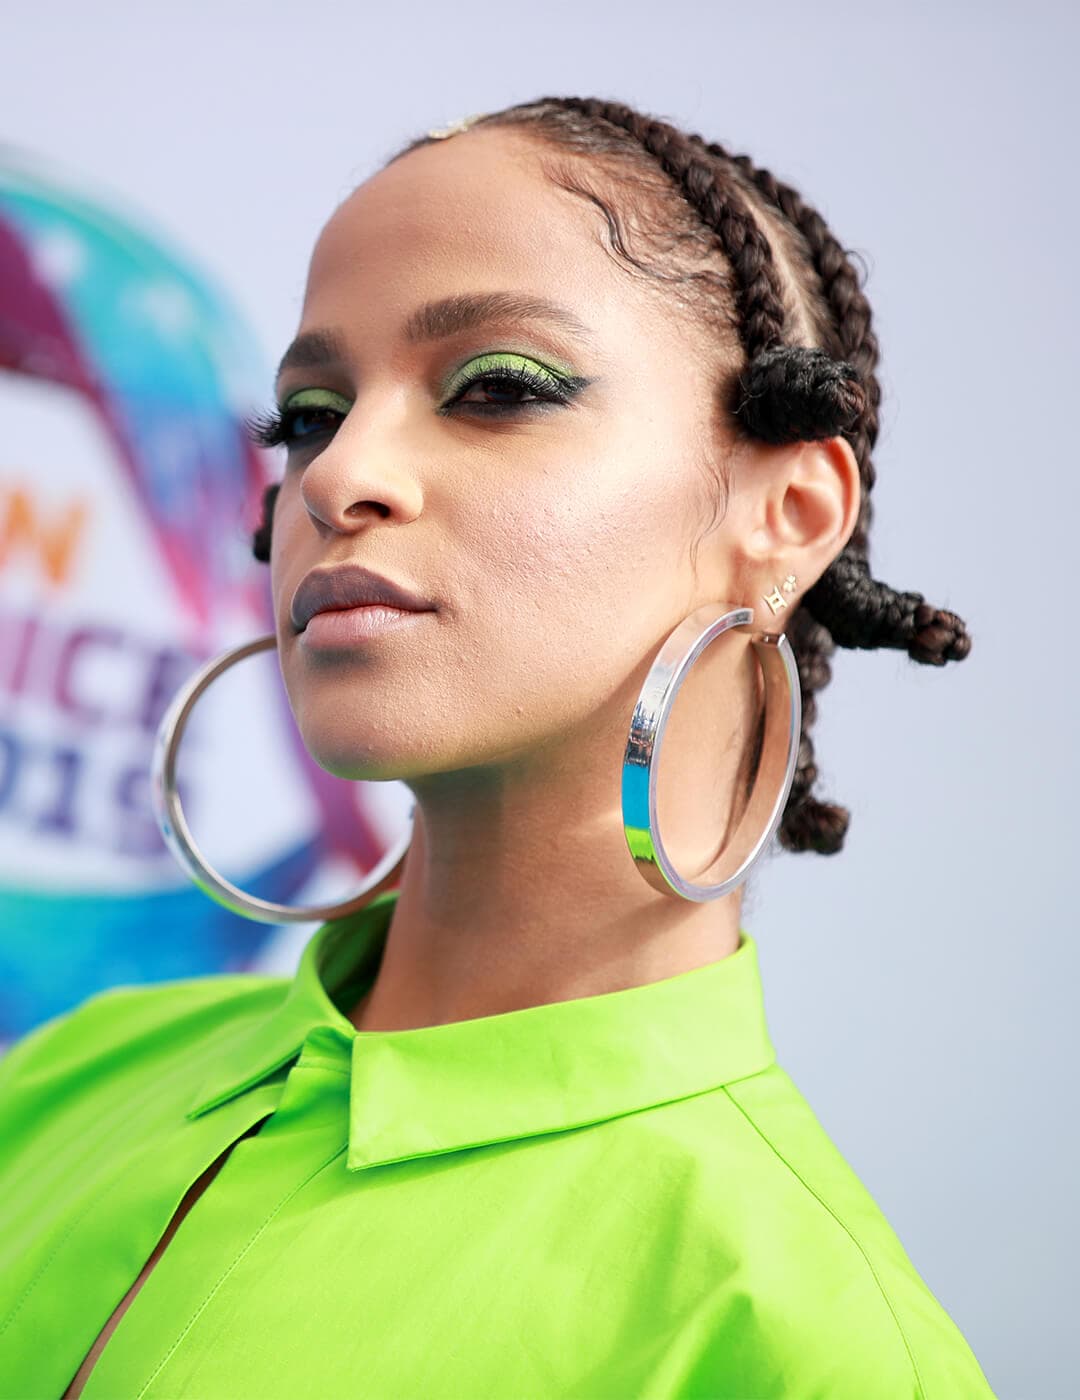 Megalyn Echikunwoke going bold in a neon green shirt, green eyeshadow look, big hoop earrings, and Bantu braids hairstyle